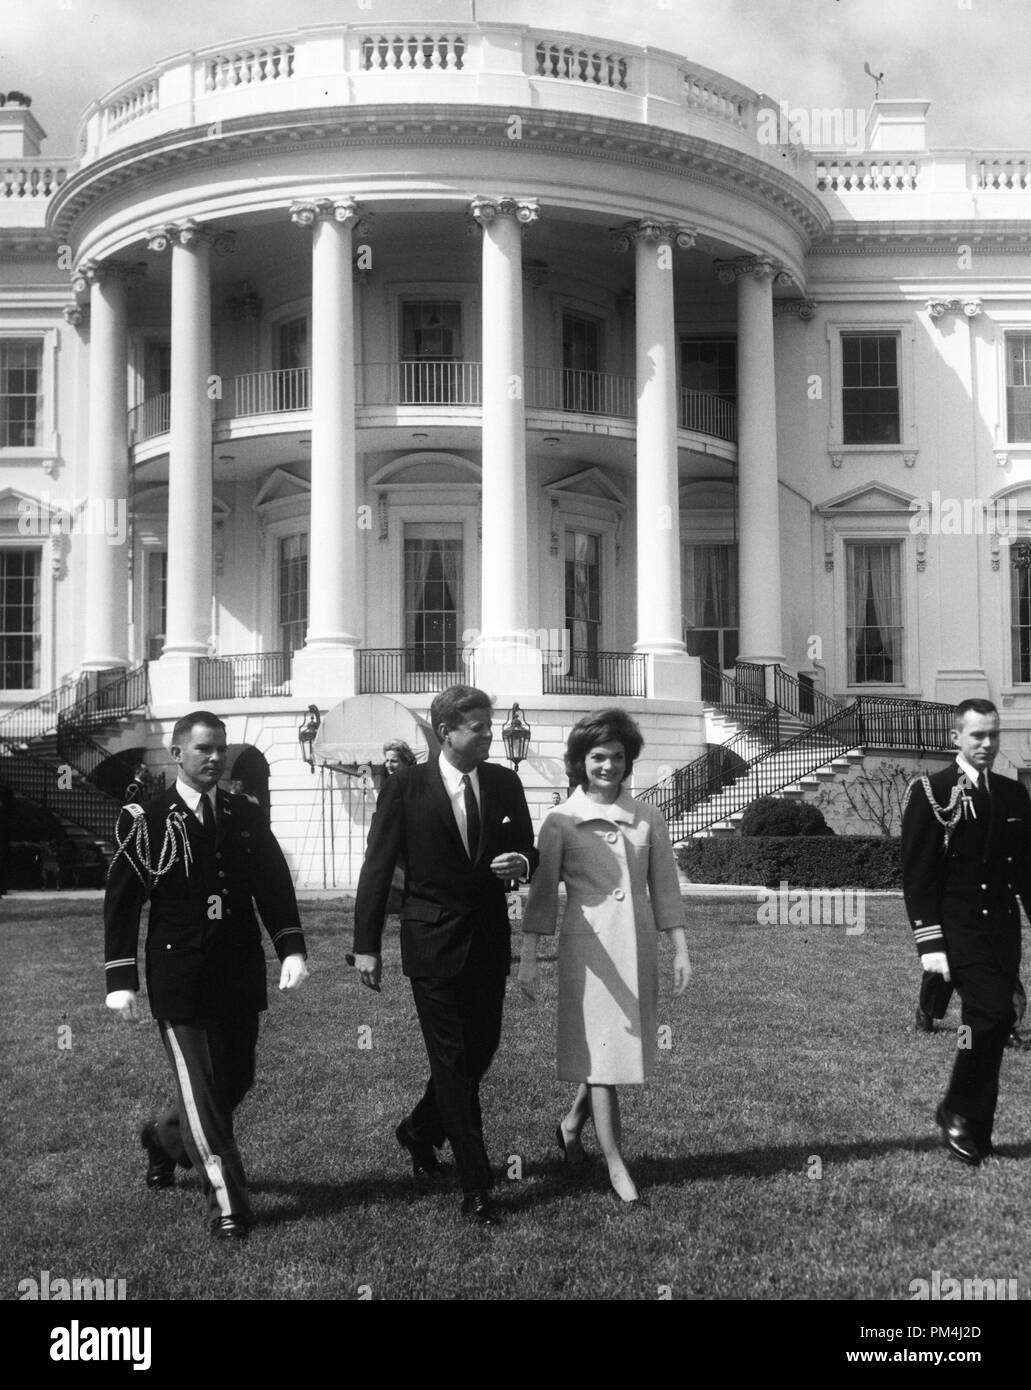 El Presidente John F. Kennedy asiste a la Primera Dama, Jacqueline Kennedy del Tercer Programa Musical de la Juventud, 16 de abril de 1962 Archivo de referencia # 1003 484tha Foto de stock